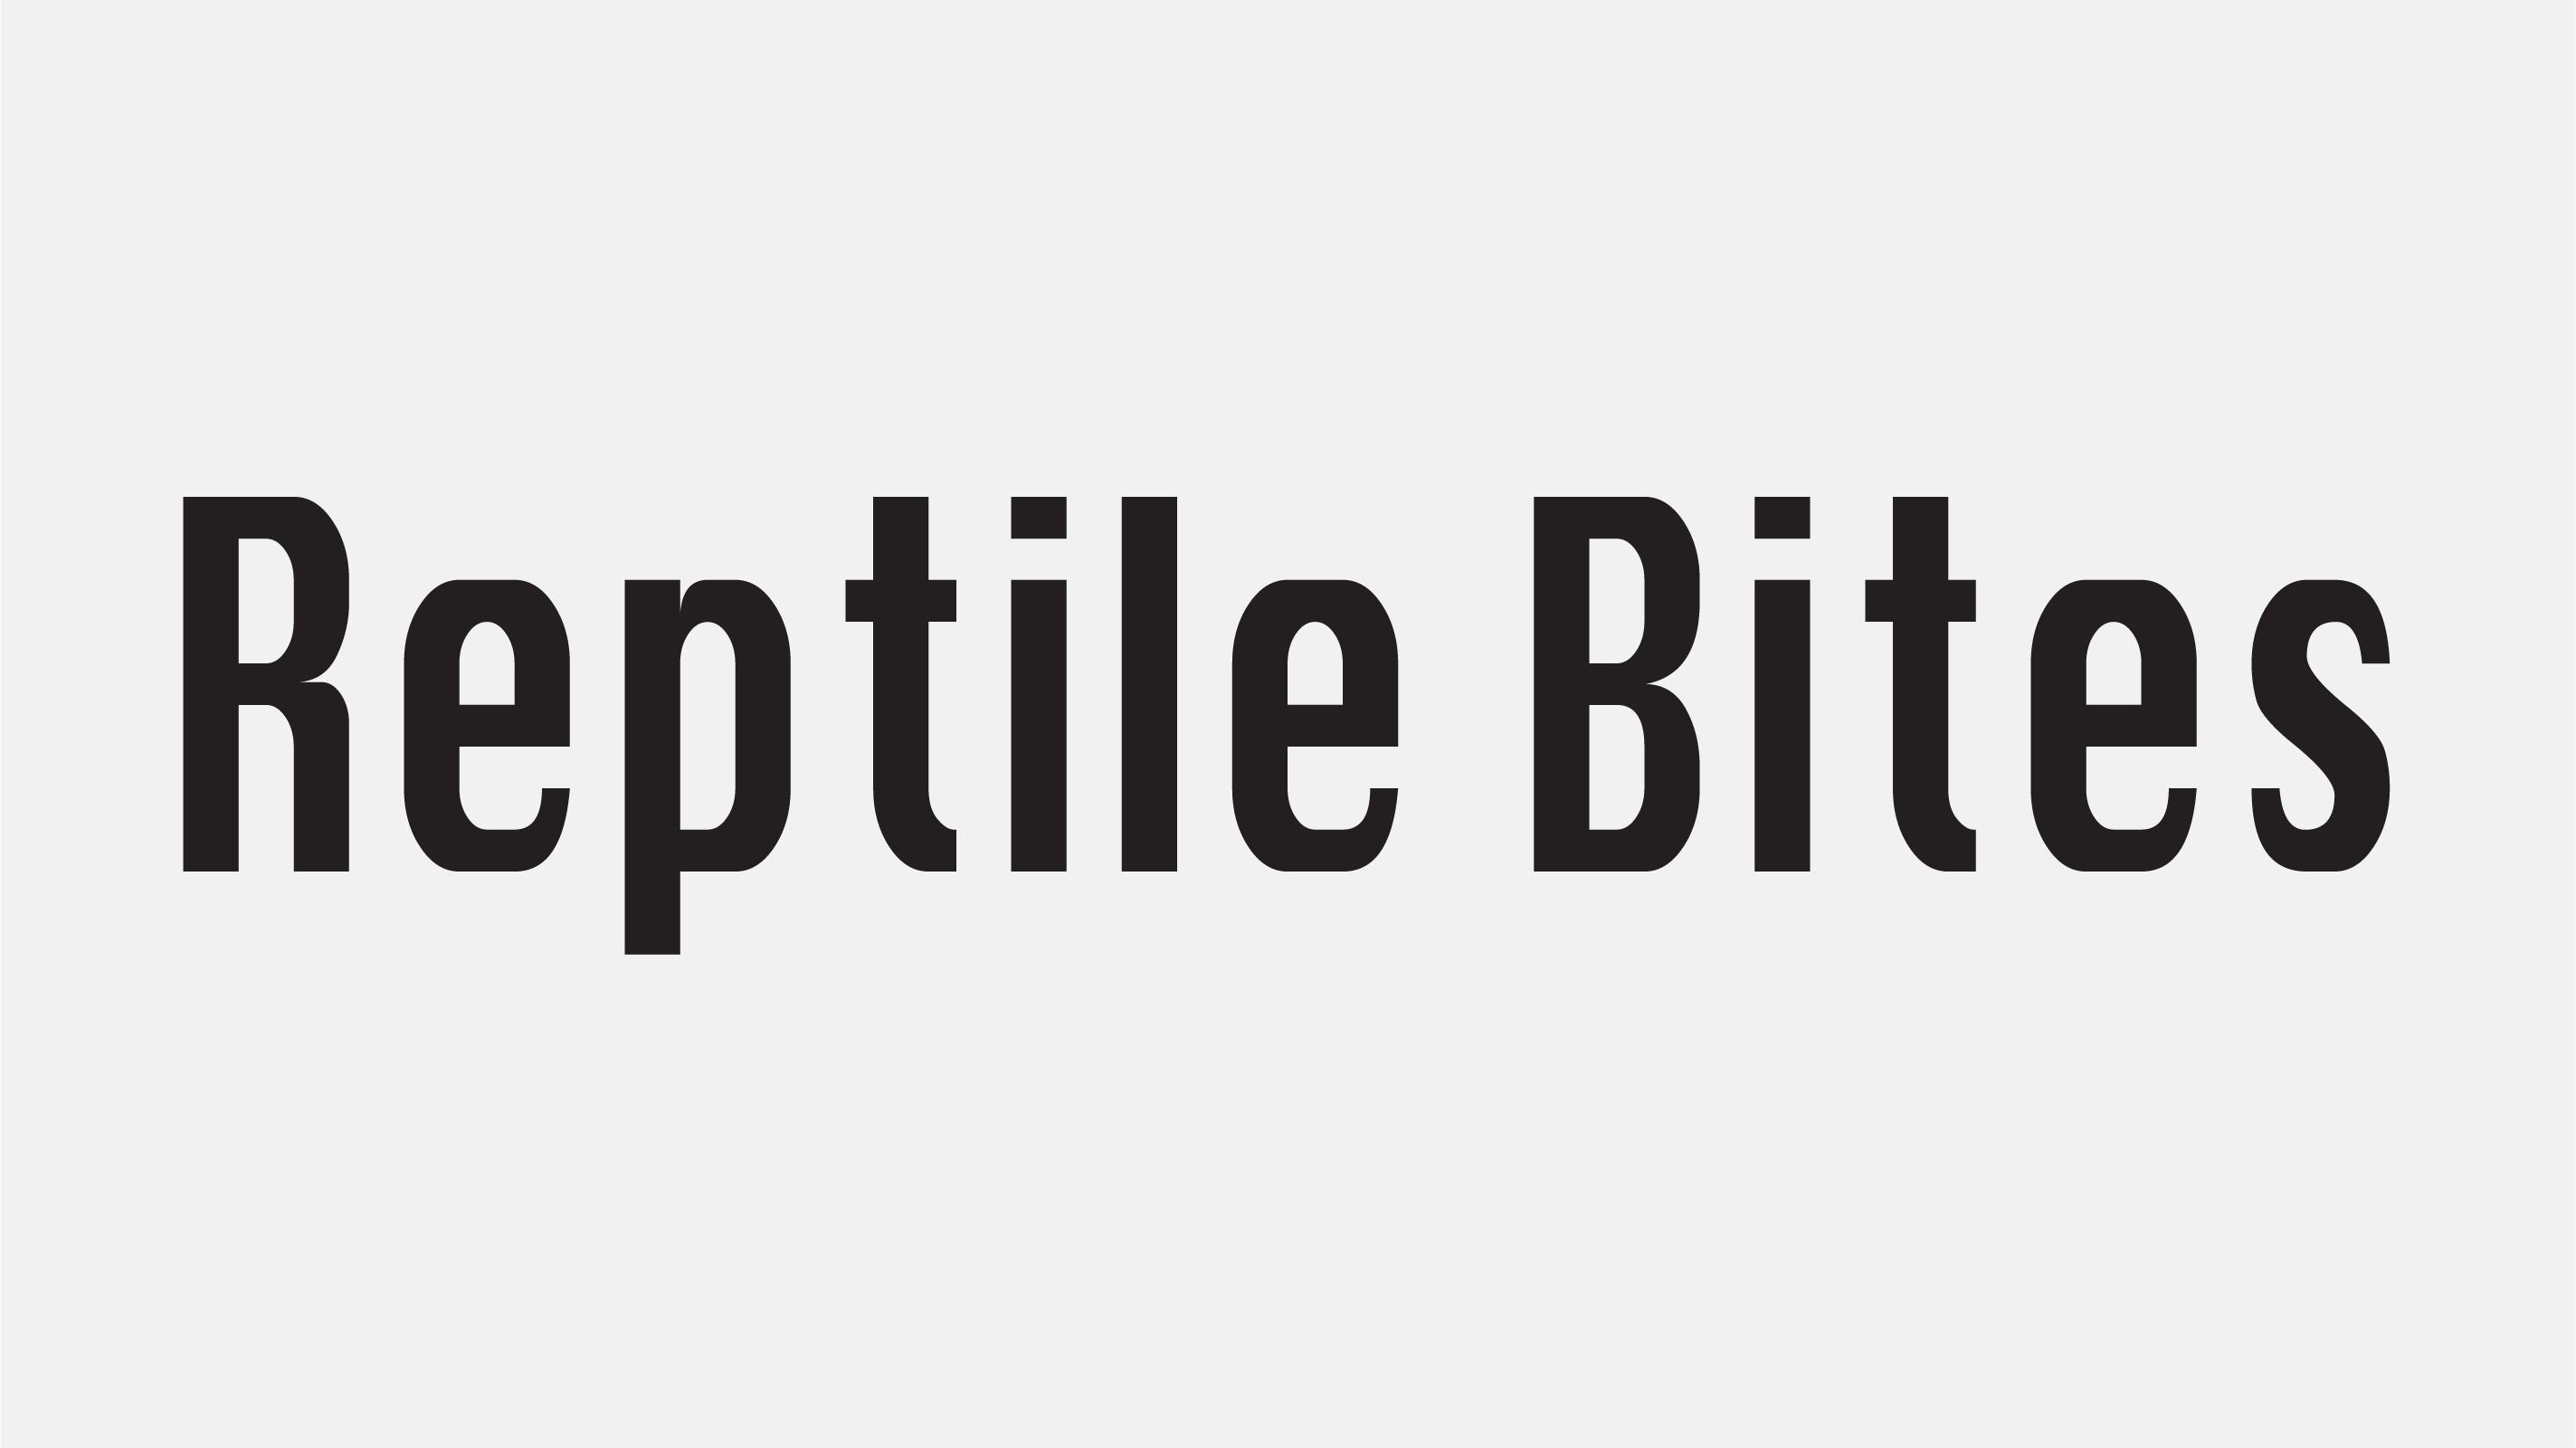 reptile bites